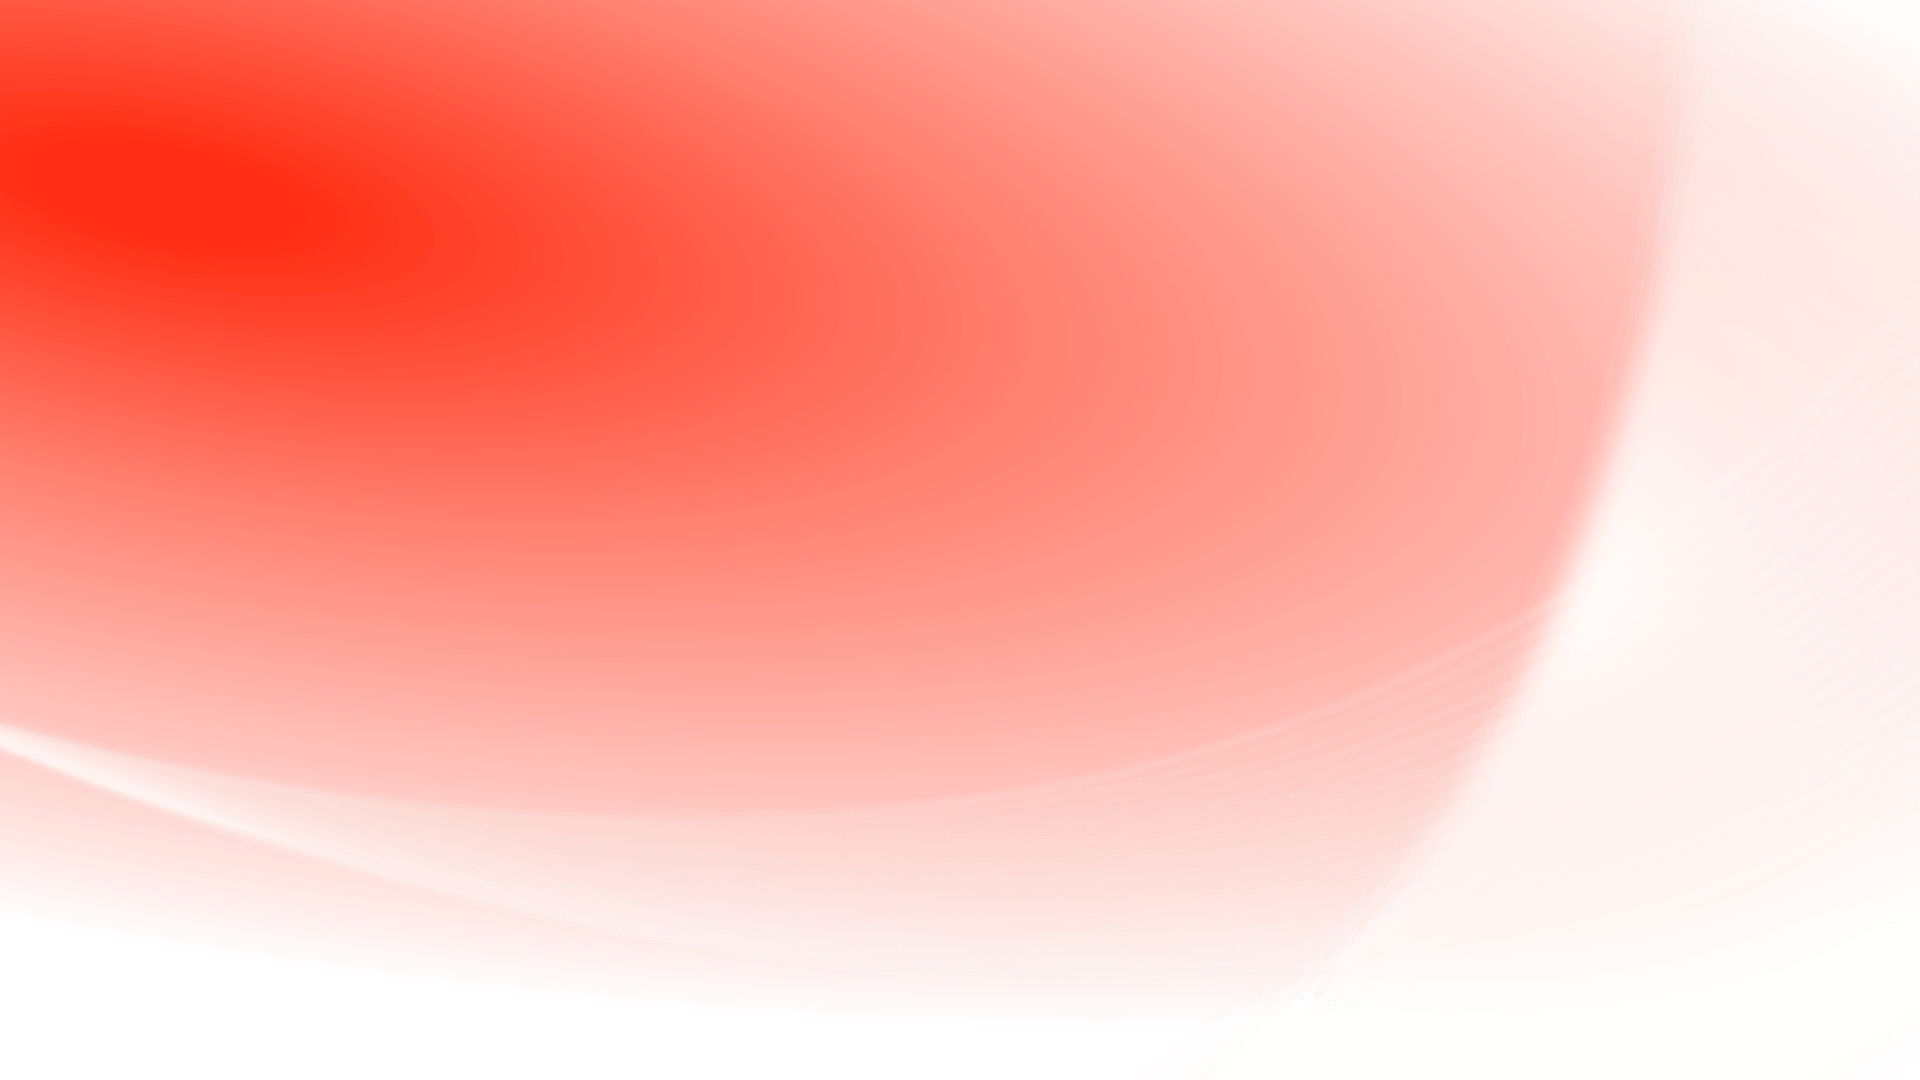 壁紙透明な背景 赤 オレンジ 閉じる 空 マクロ撮影 5611 Wallpaperuse